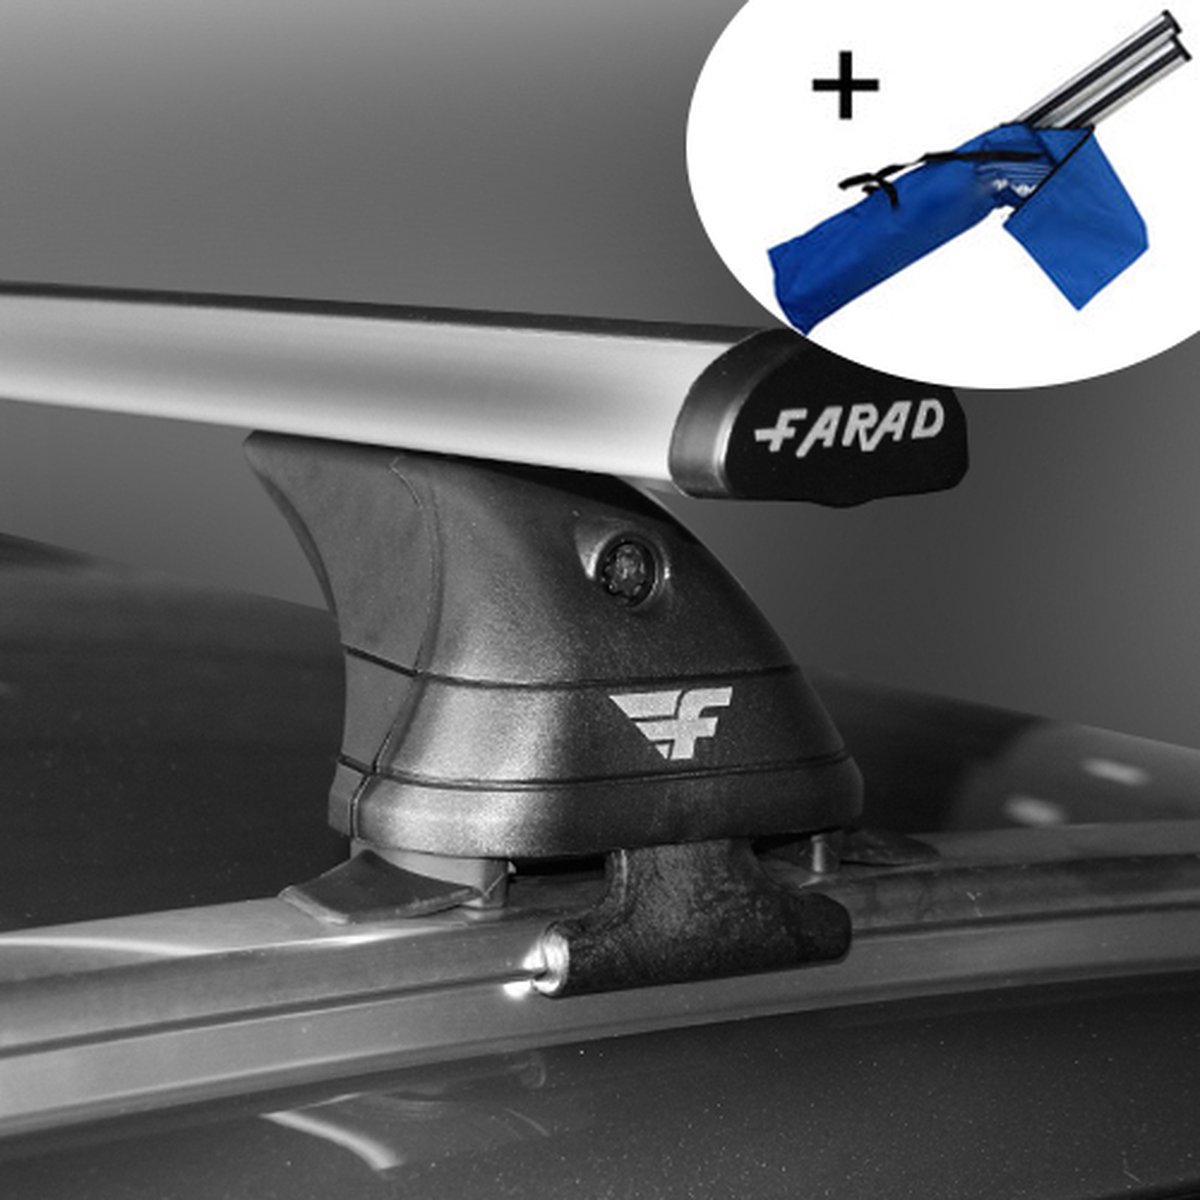 Dakdragers geschikt voor Ford Focus Sw Stationwagon 2011 t/m 2018 - Aluminium - inclusief dakdrager opbergtas